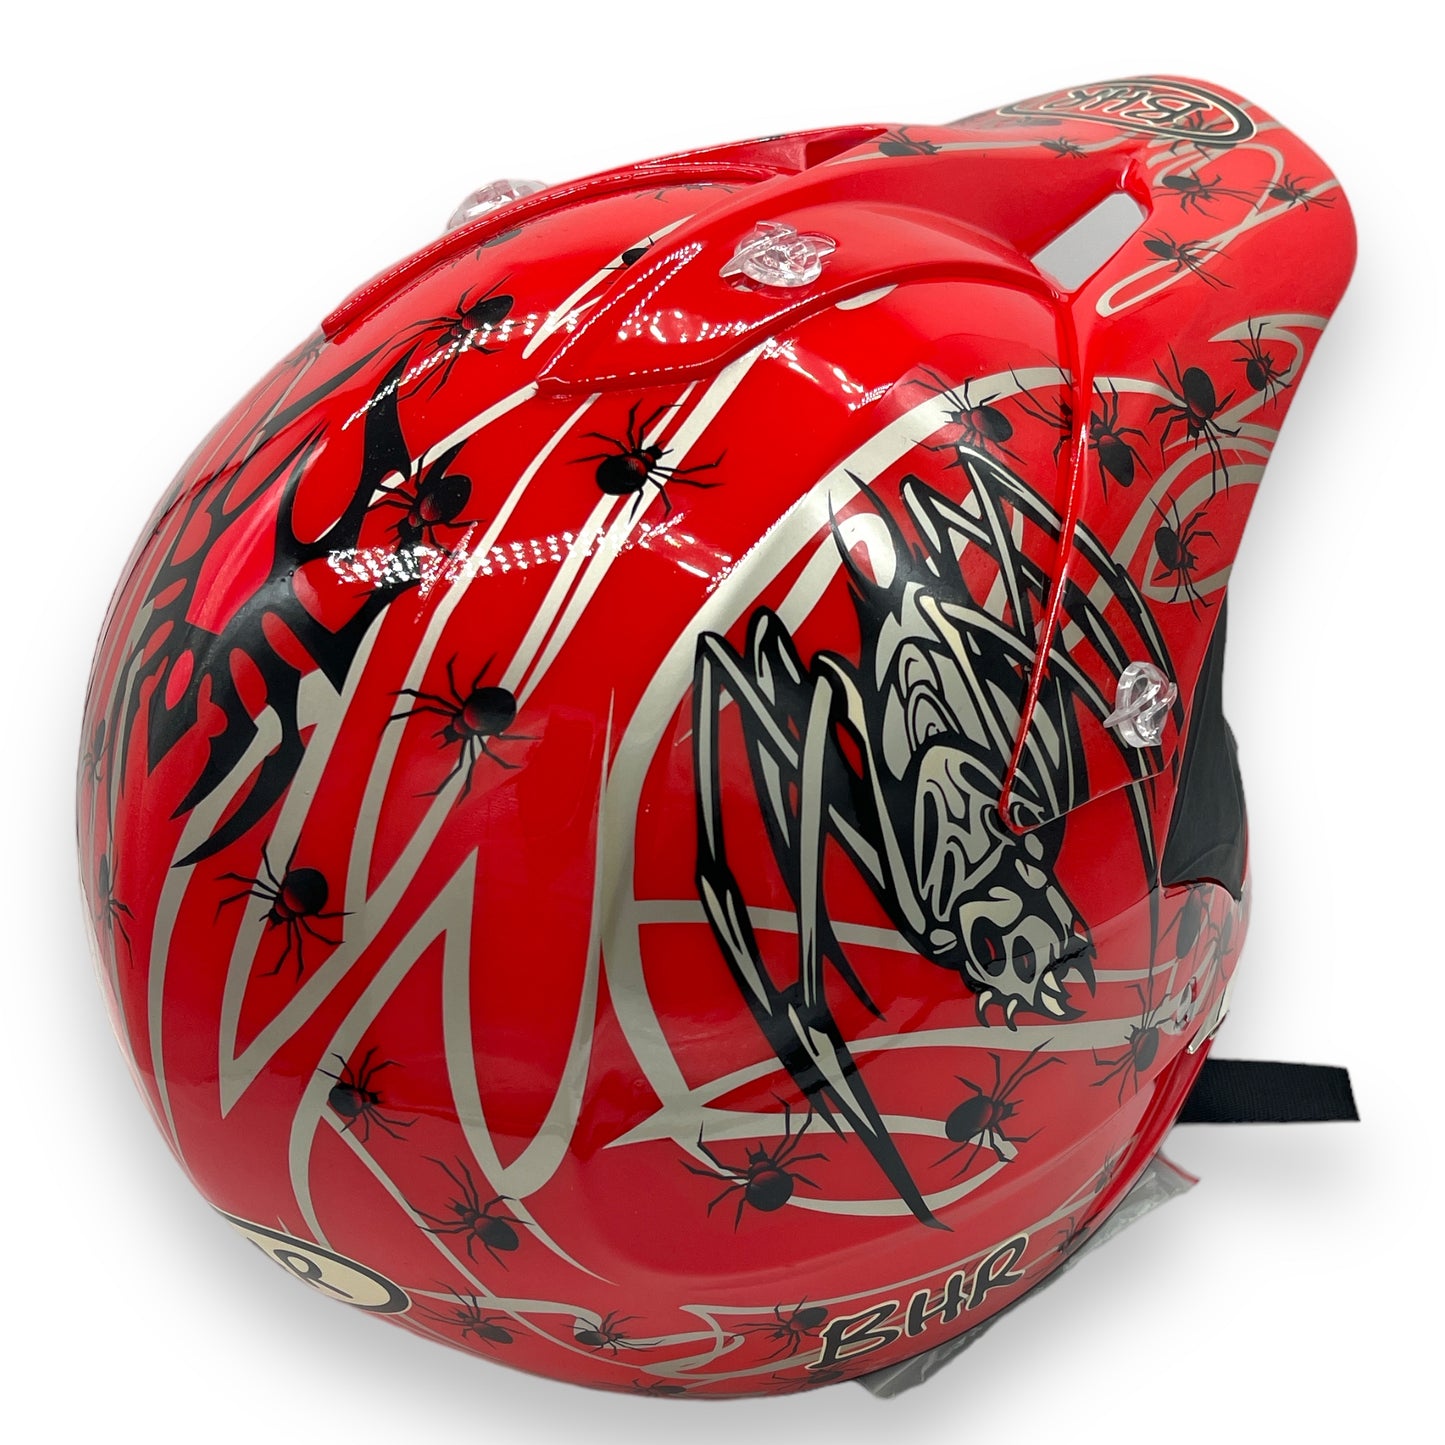 BHR - PM005 - Helmet Spider - Medium - Red - 1 Piece